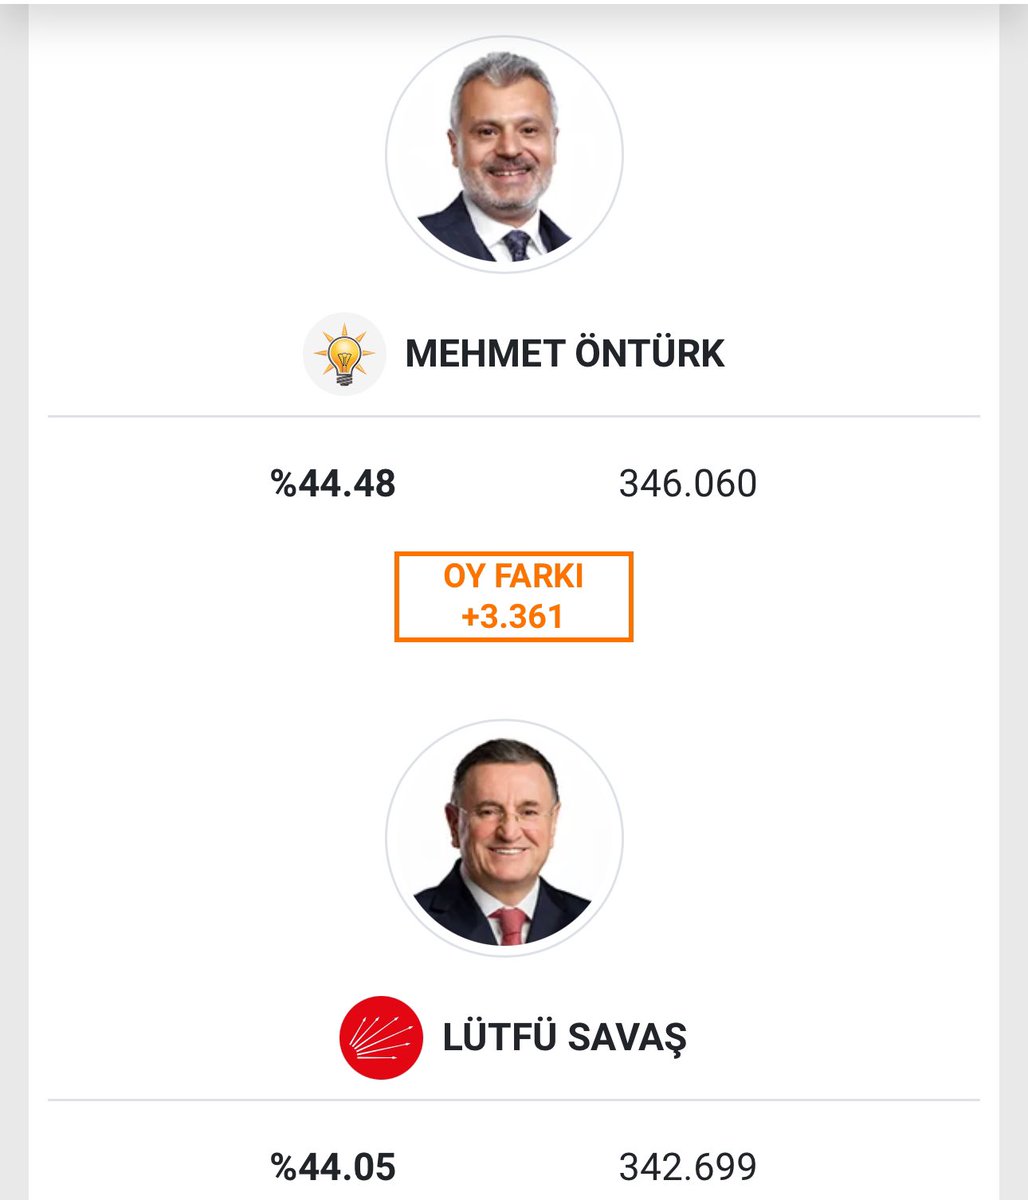 Hatay’daki seçim sonucunda AKP adayı Mehmet Öntürk seçimi CHP adayı Lütfü Savaş’tan 3361 oy daha fazla alarak kazandı. Lütfü Savaş ve ekibi tutanaklarda maddi hataların olduğunu tespit etti ve itiraz etti.İtirazlar sonucunda ise fark 2569’a düştü. Aradaki fark 2569 iken